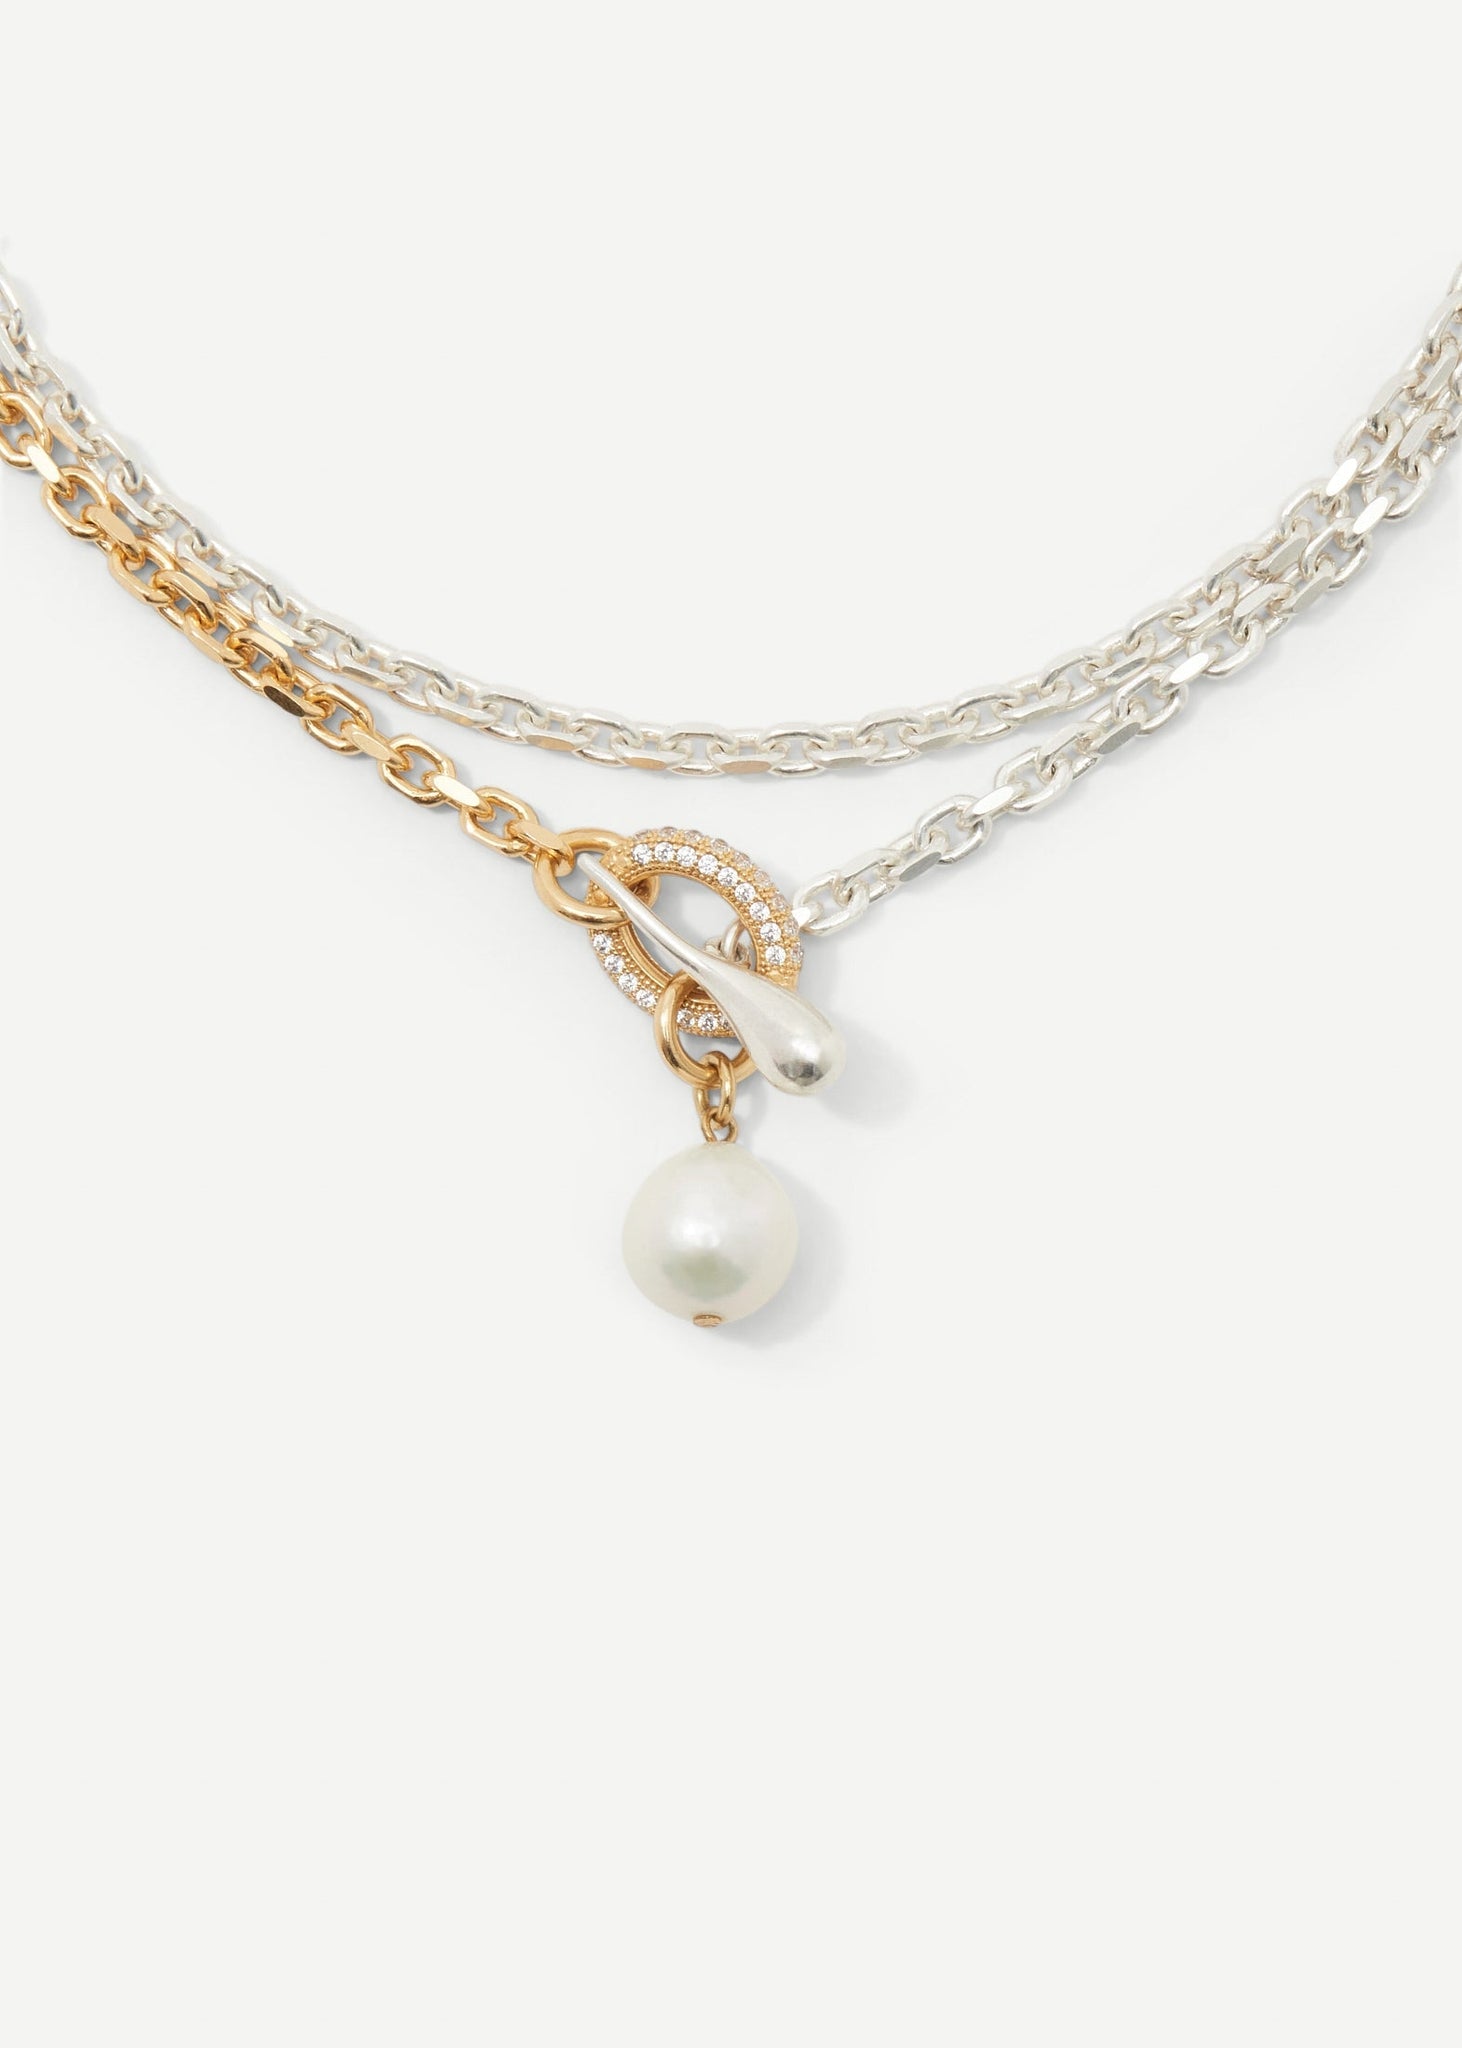 Stoned Lariat Necklace - Necklaces - Cornelia Webb - 1